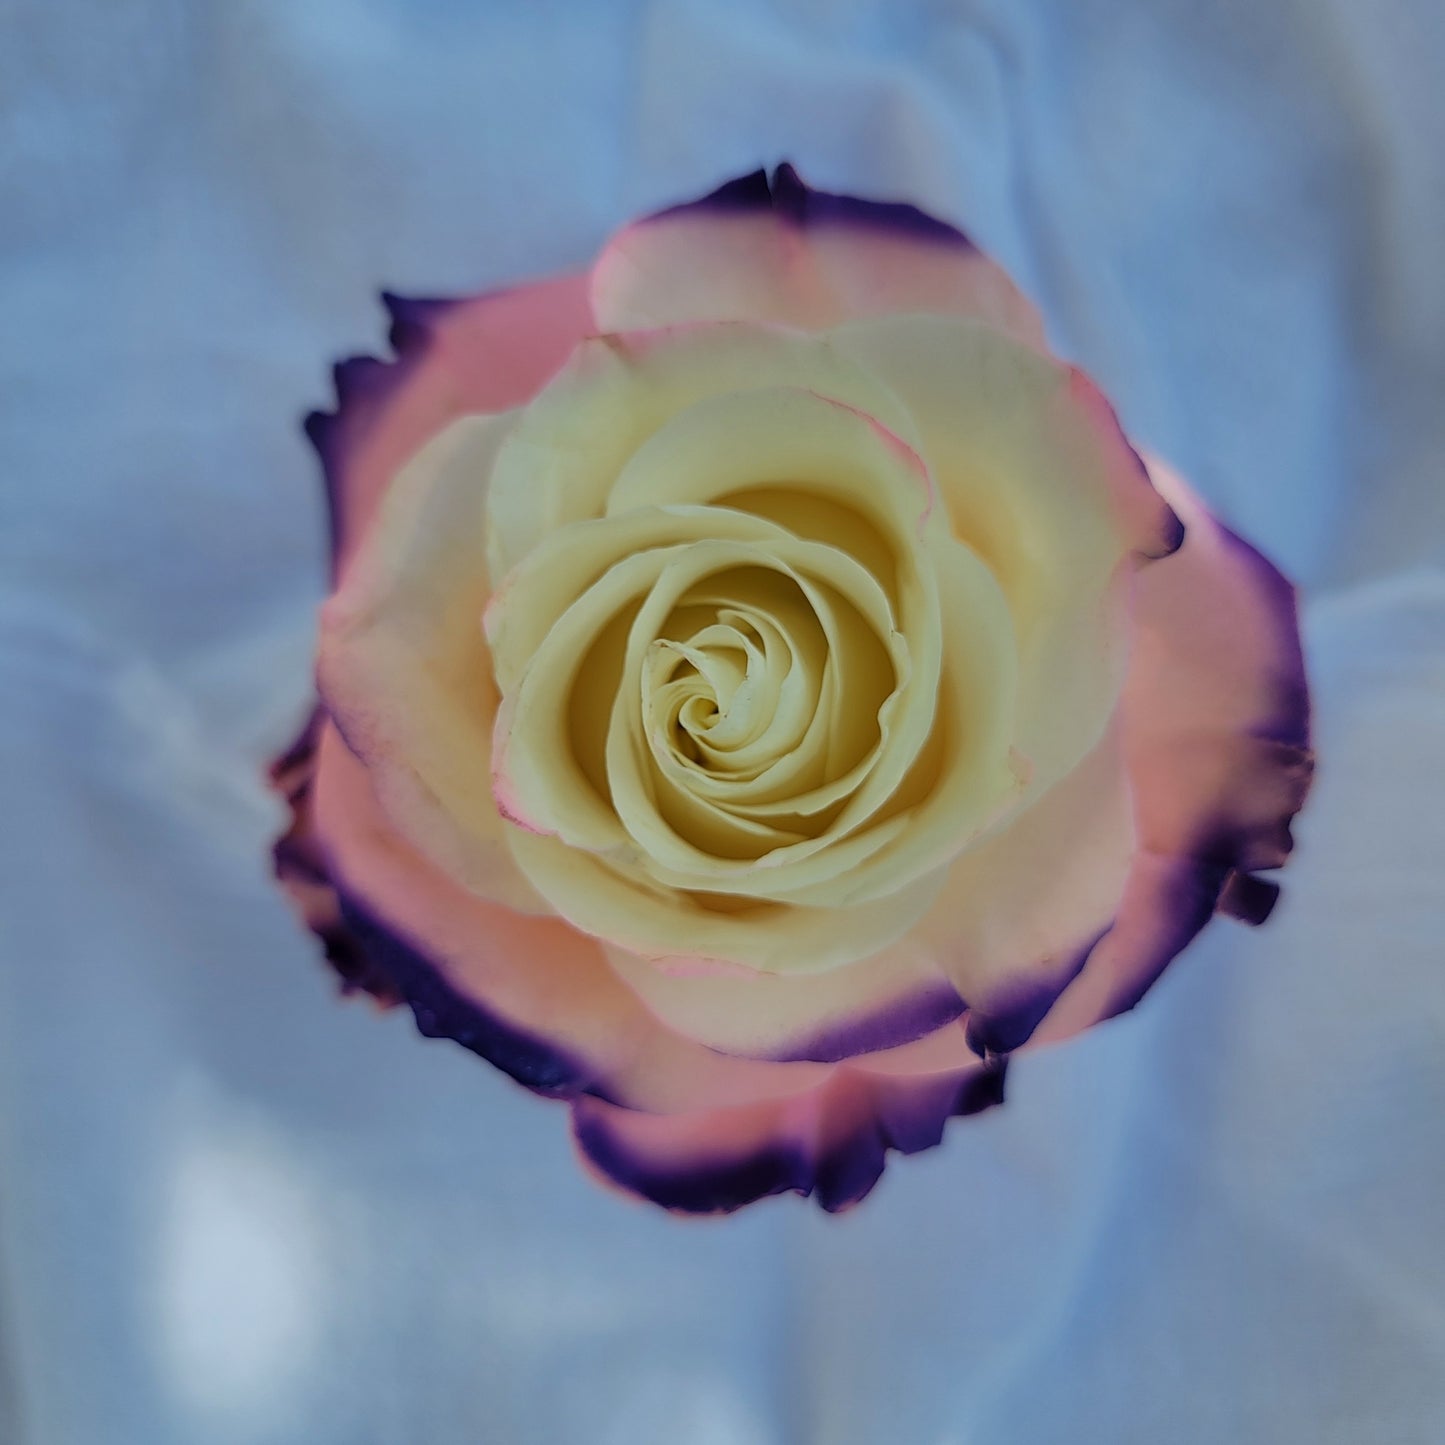 Nothern Lights Rose Bouquet 6-Stem